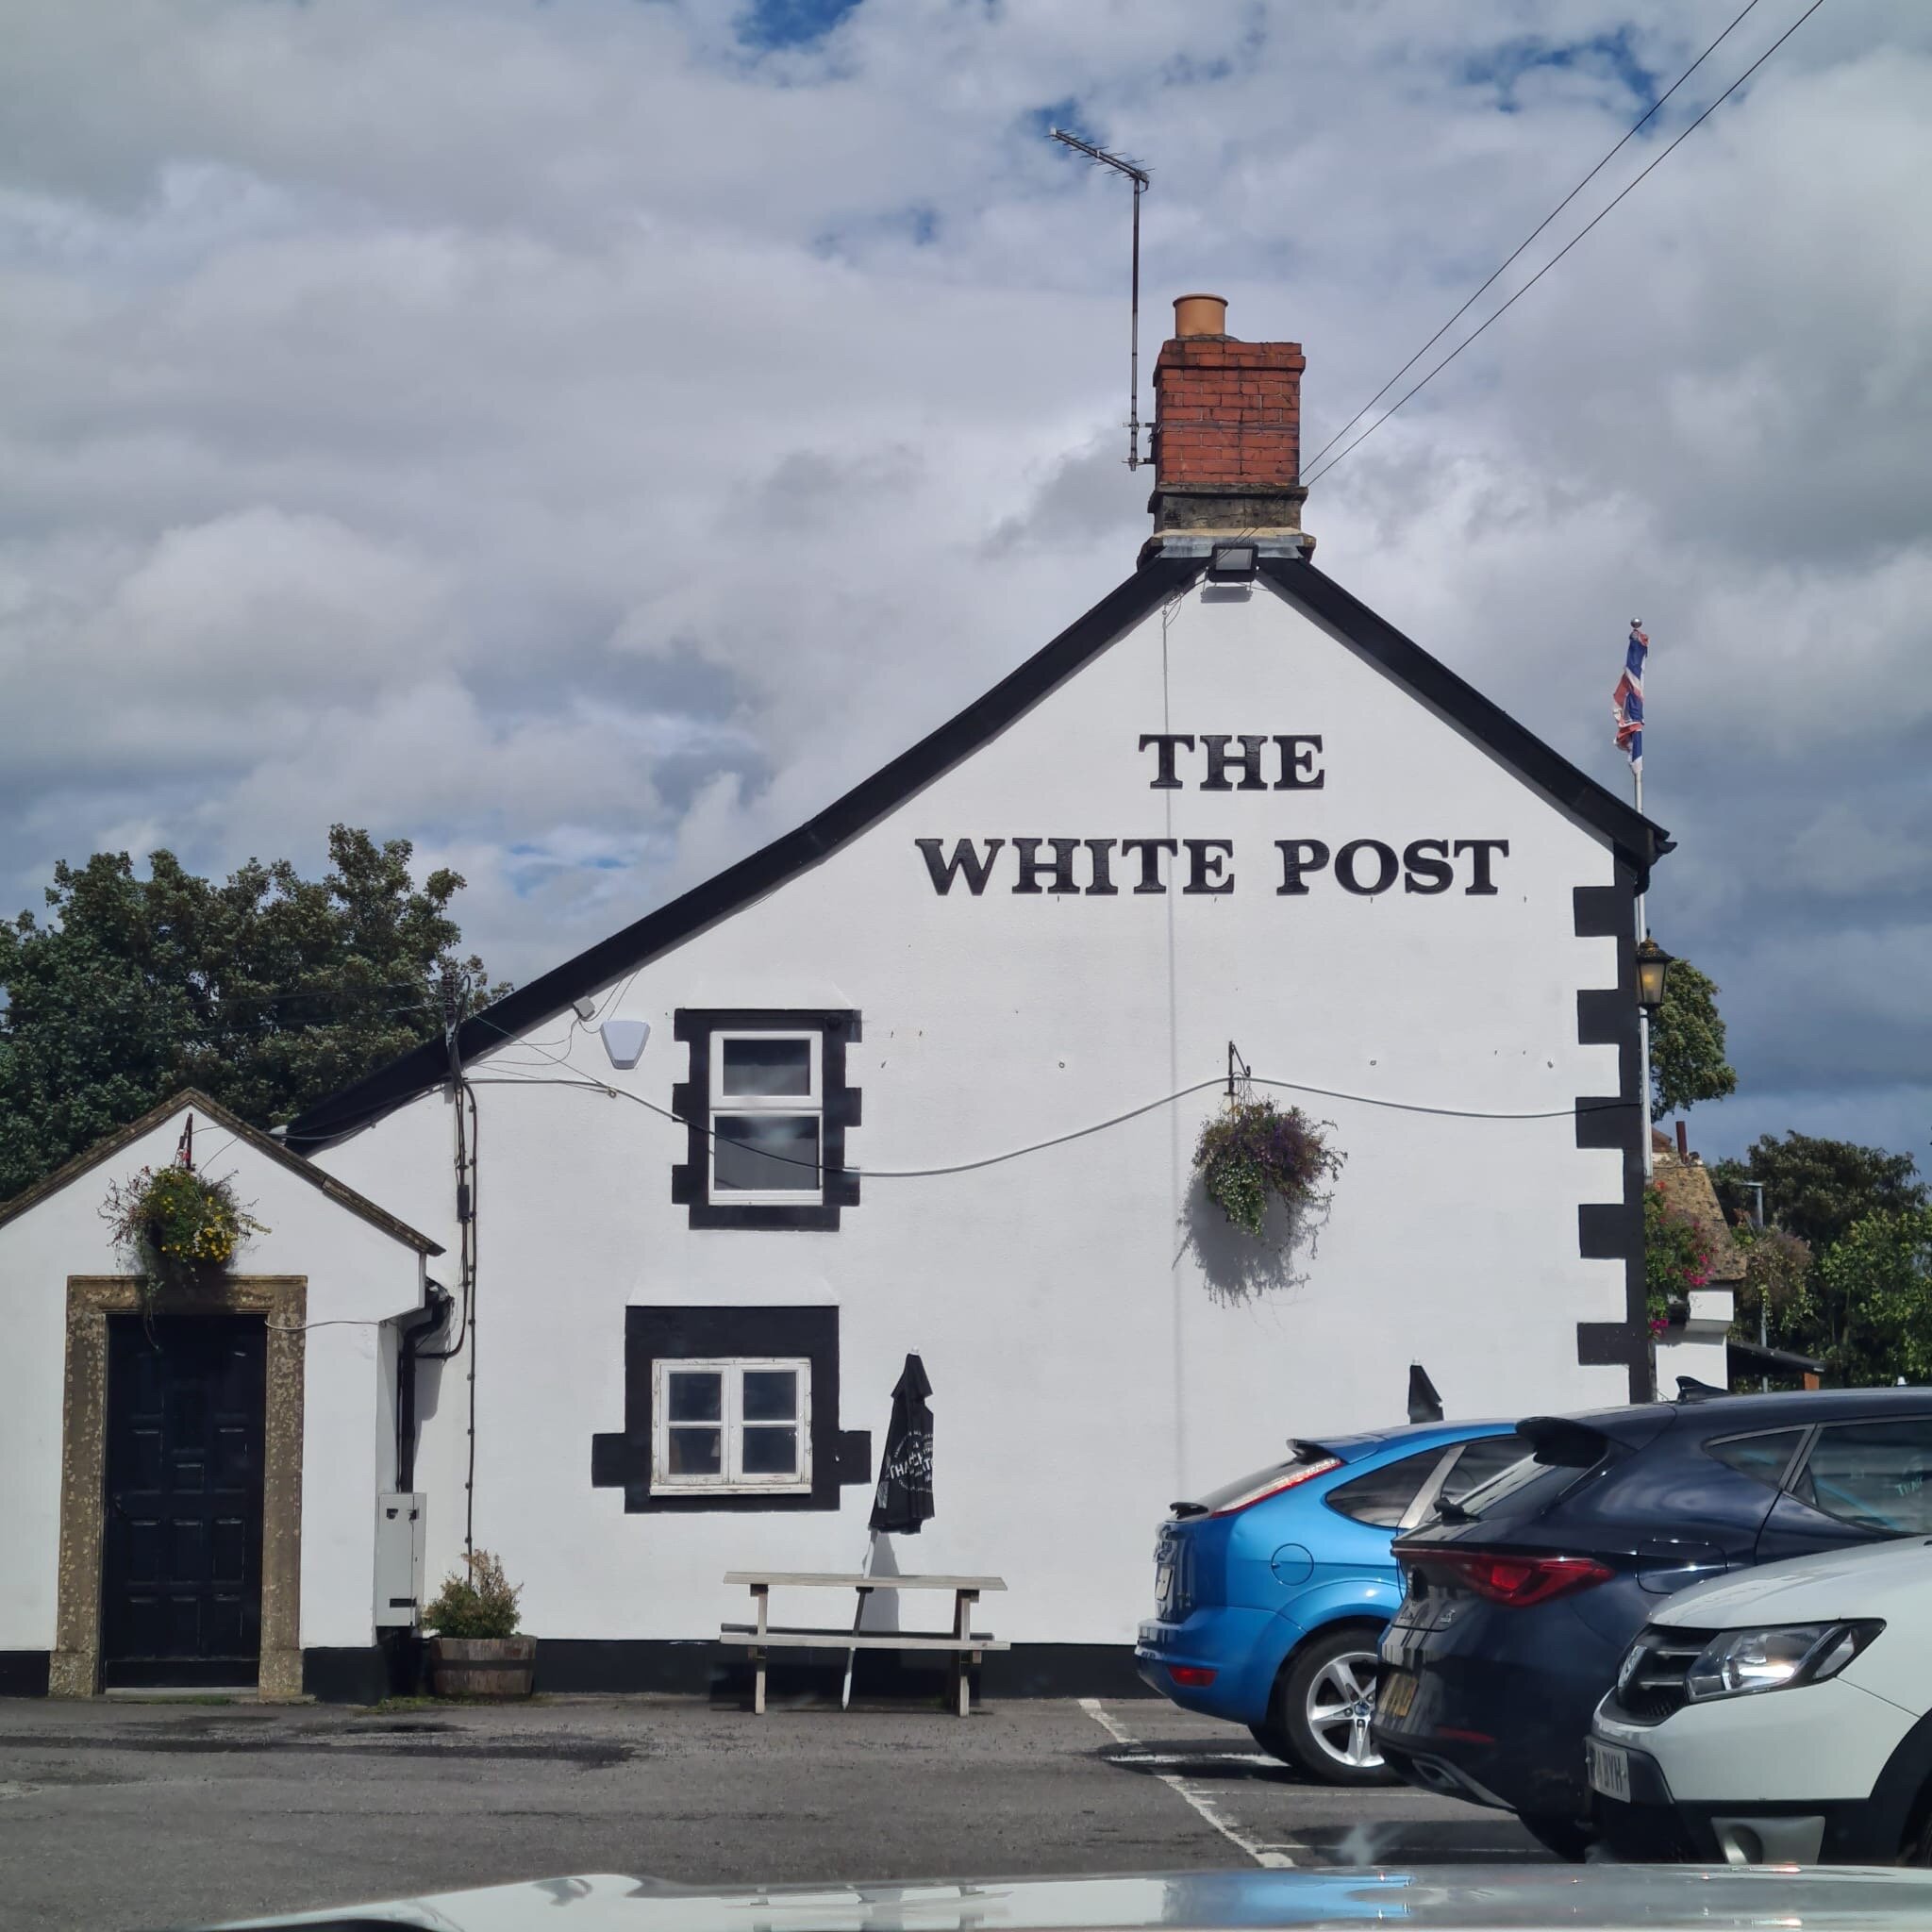 The White Post Inn